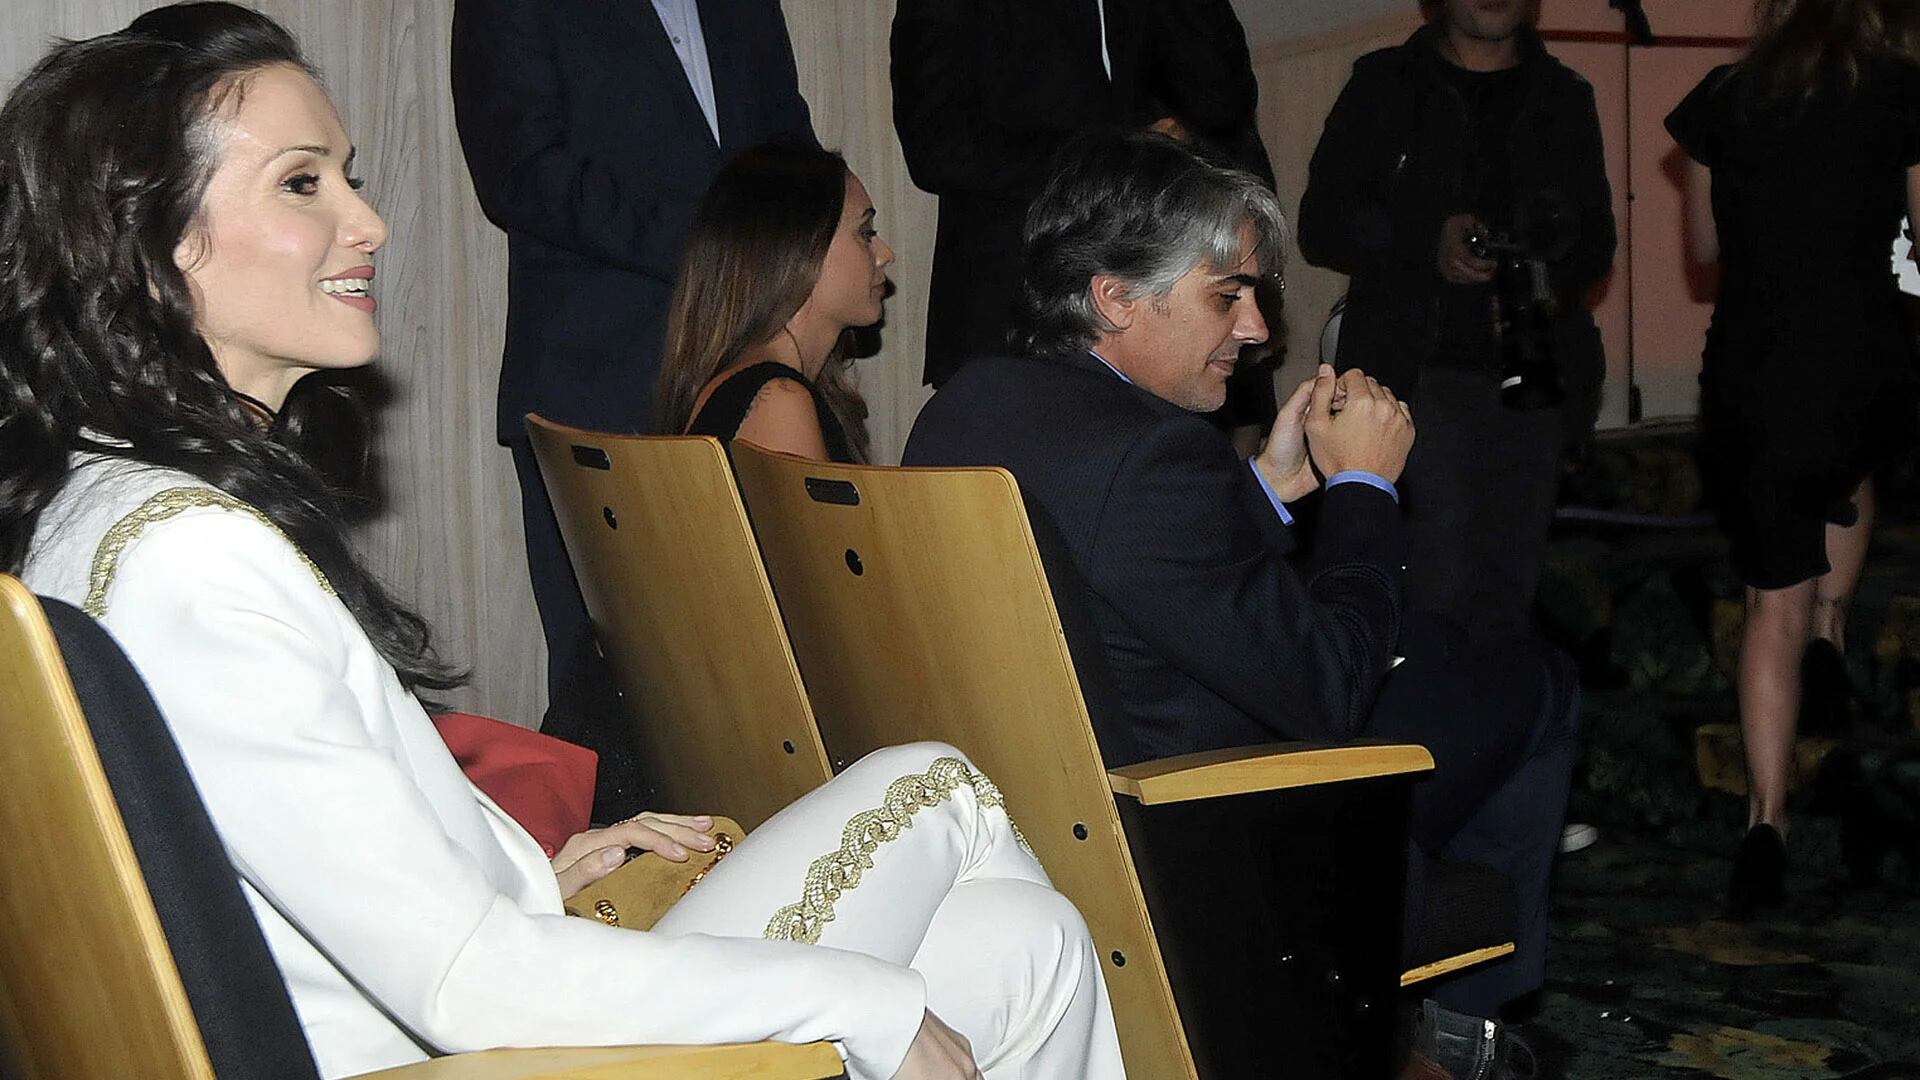 Natalia Oreiro y Pablo Echarri asistieron a los premios Platinos, pero no se saludaron